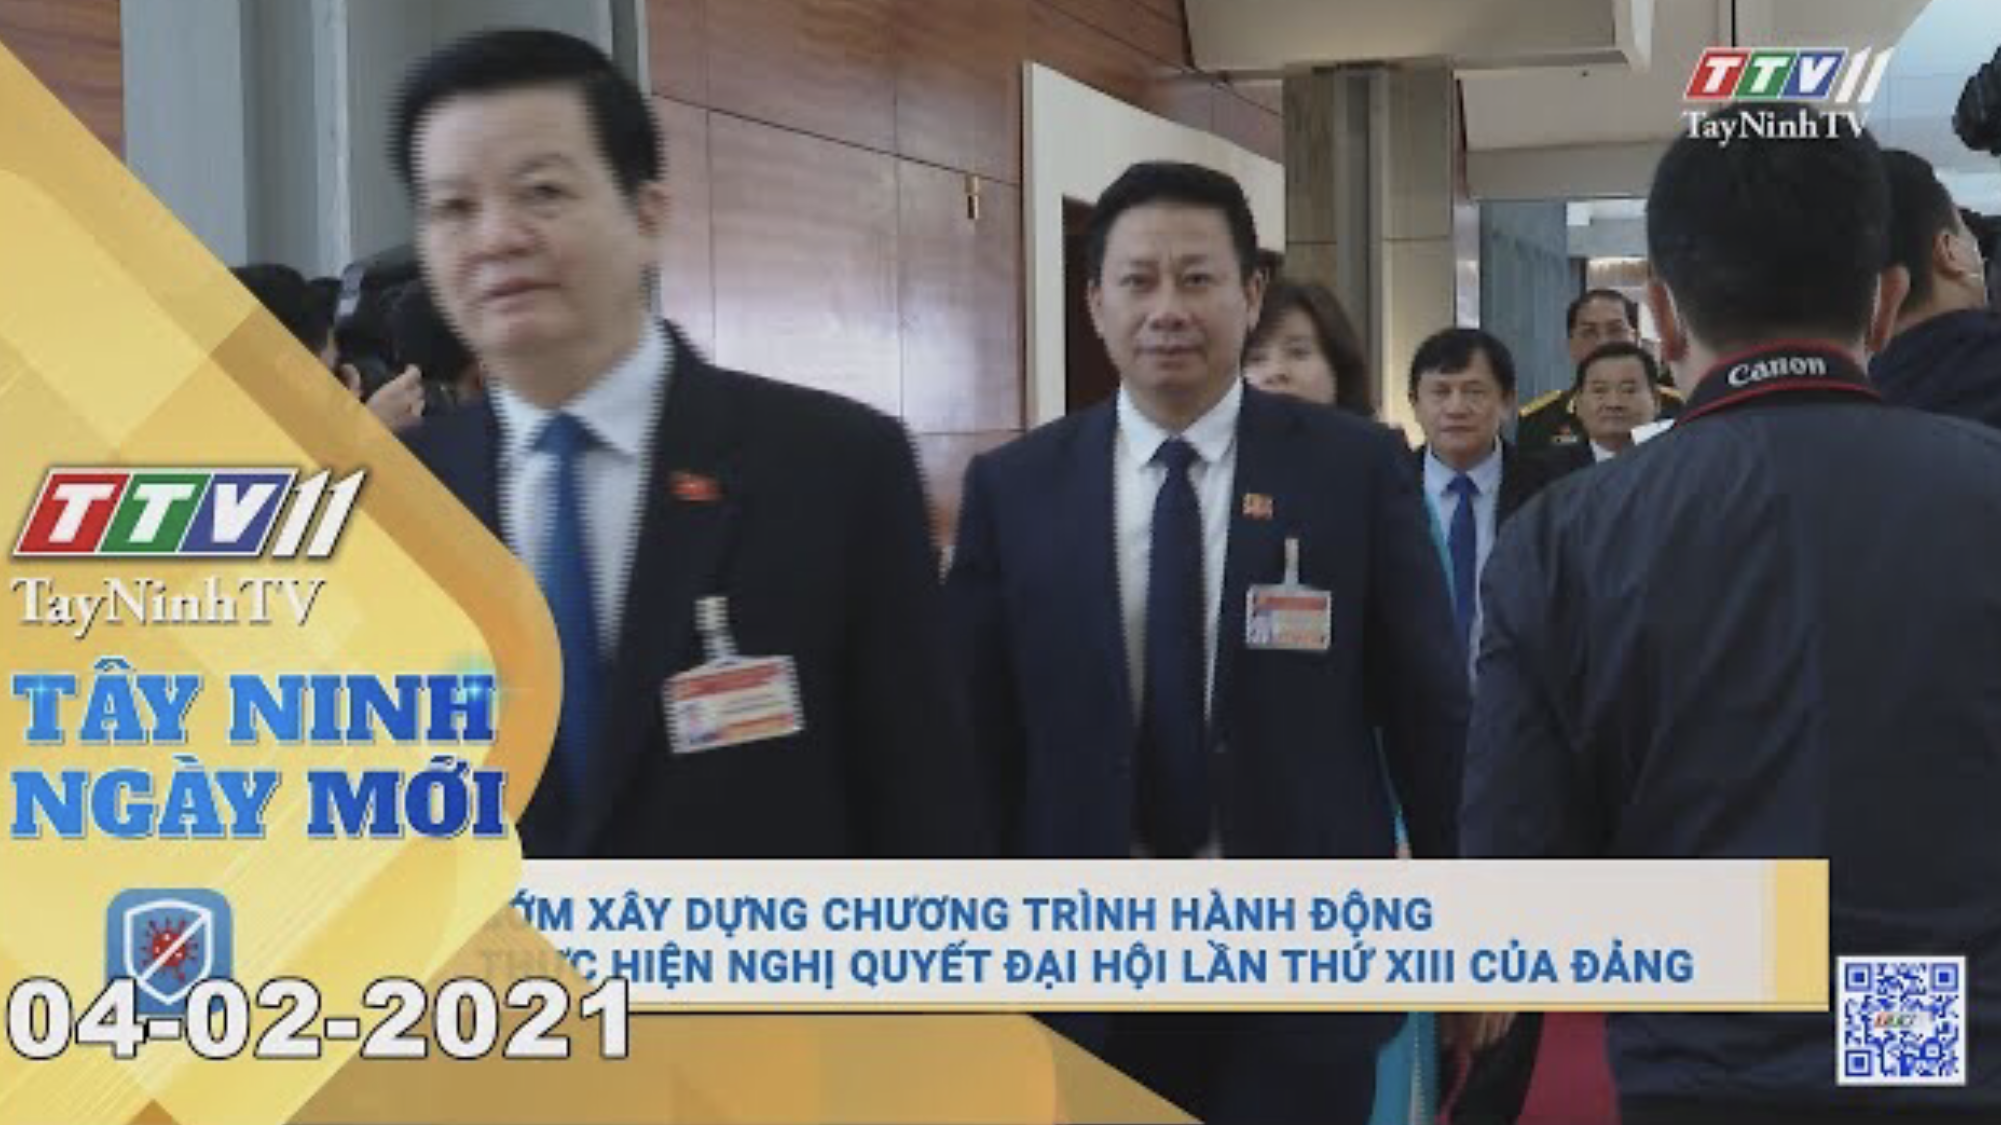 Tây Ninh Ngày Mới 04-02-2021 | Tin tức hôm nay | TayNinhTV